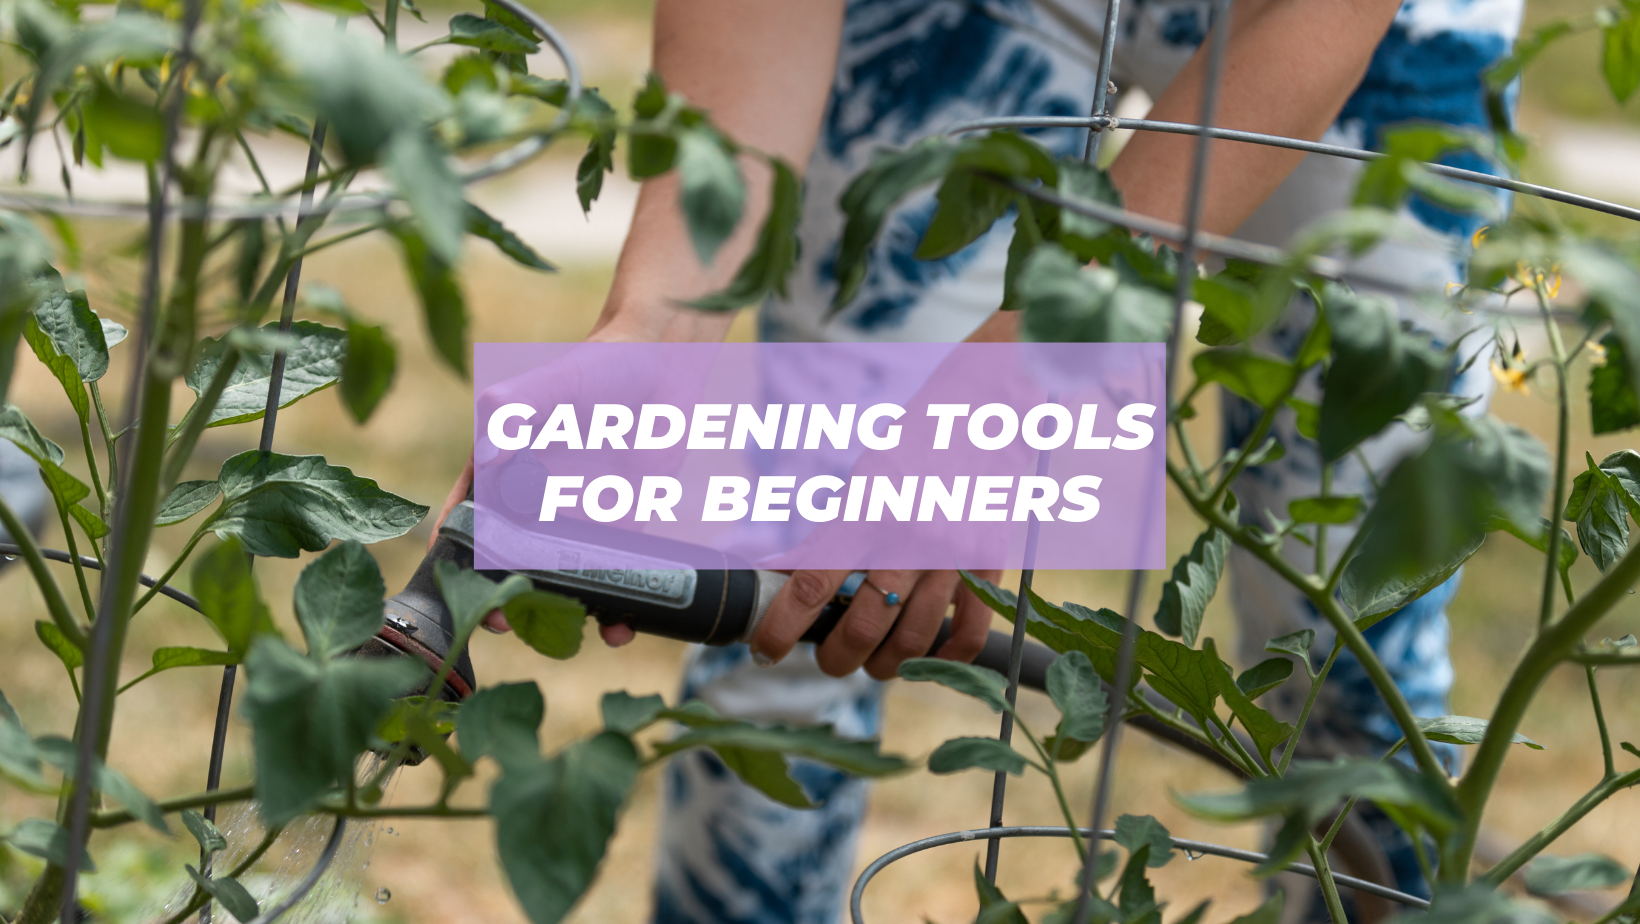 best gardening tools